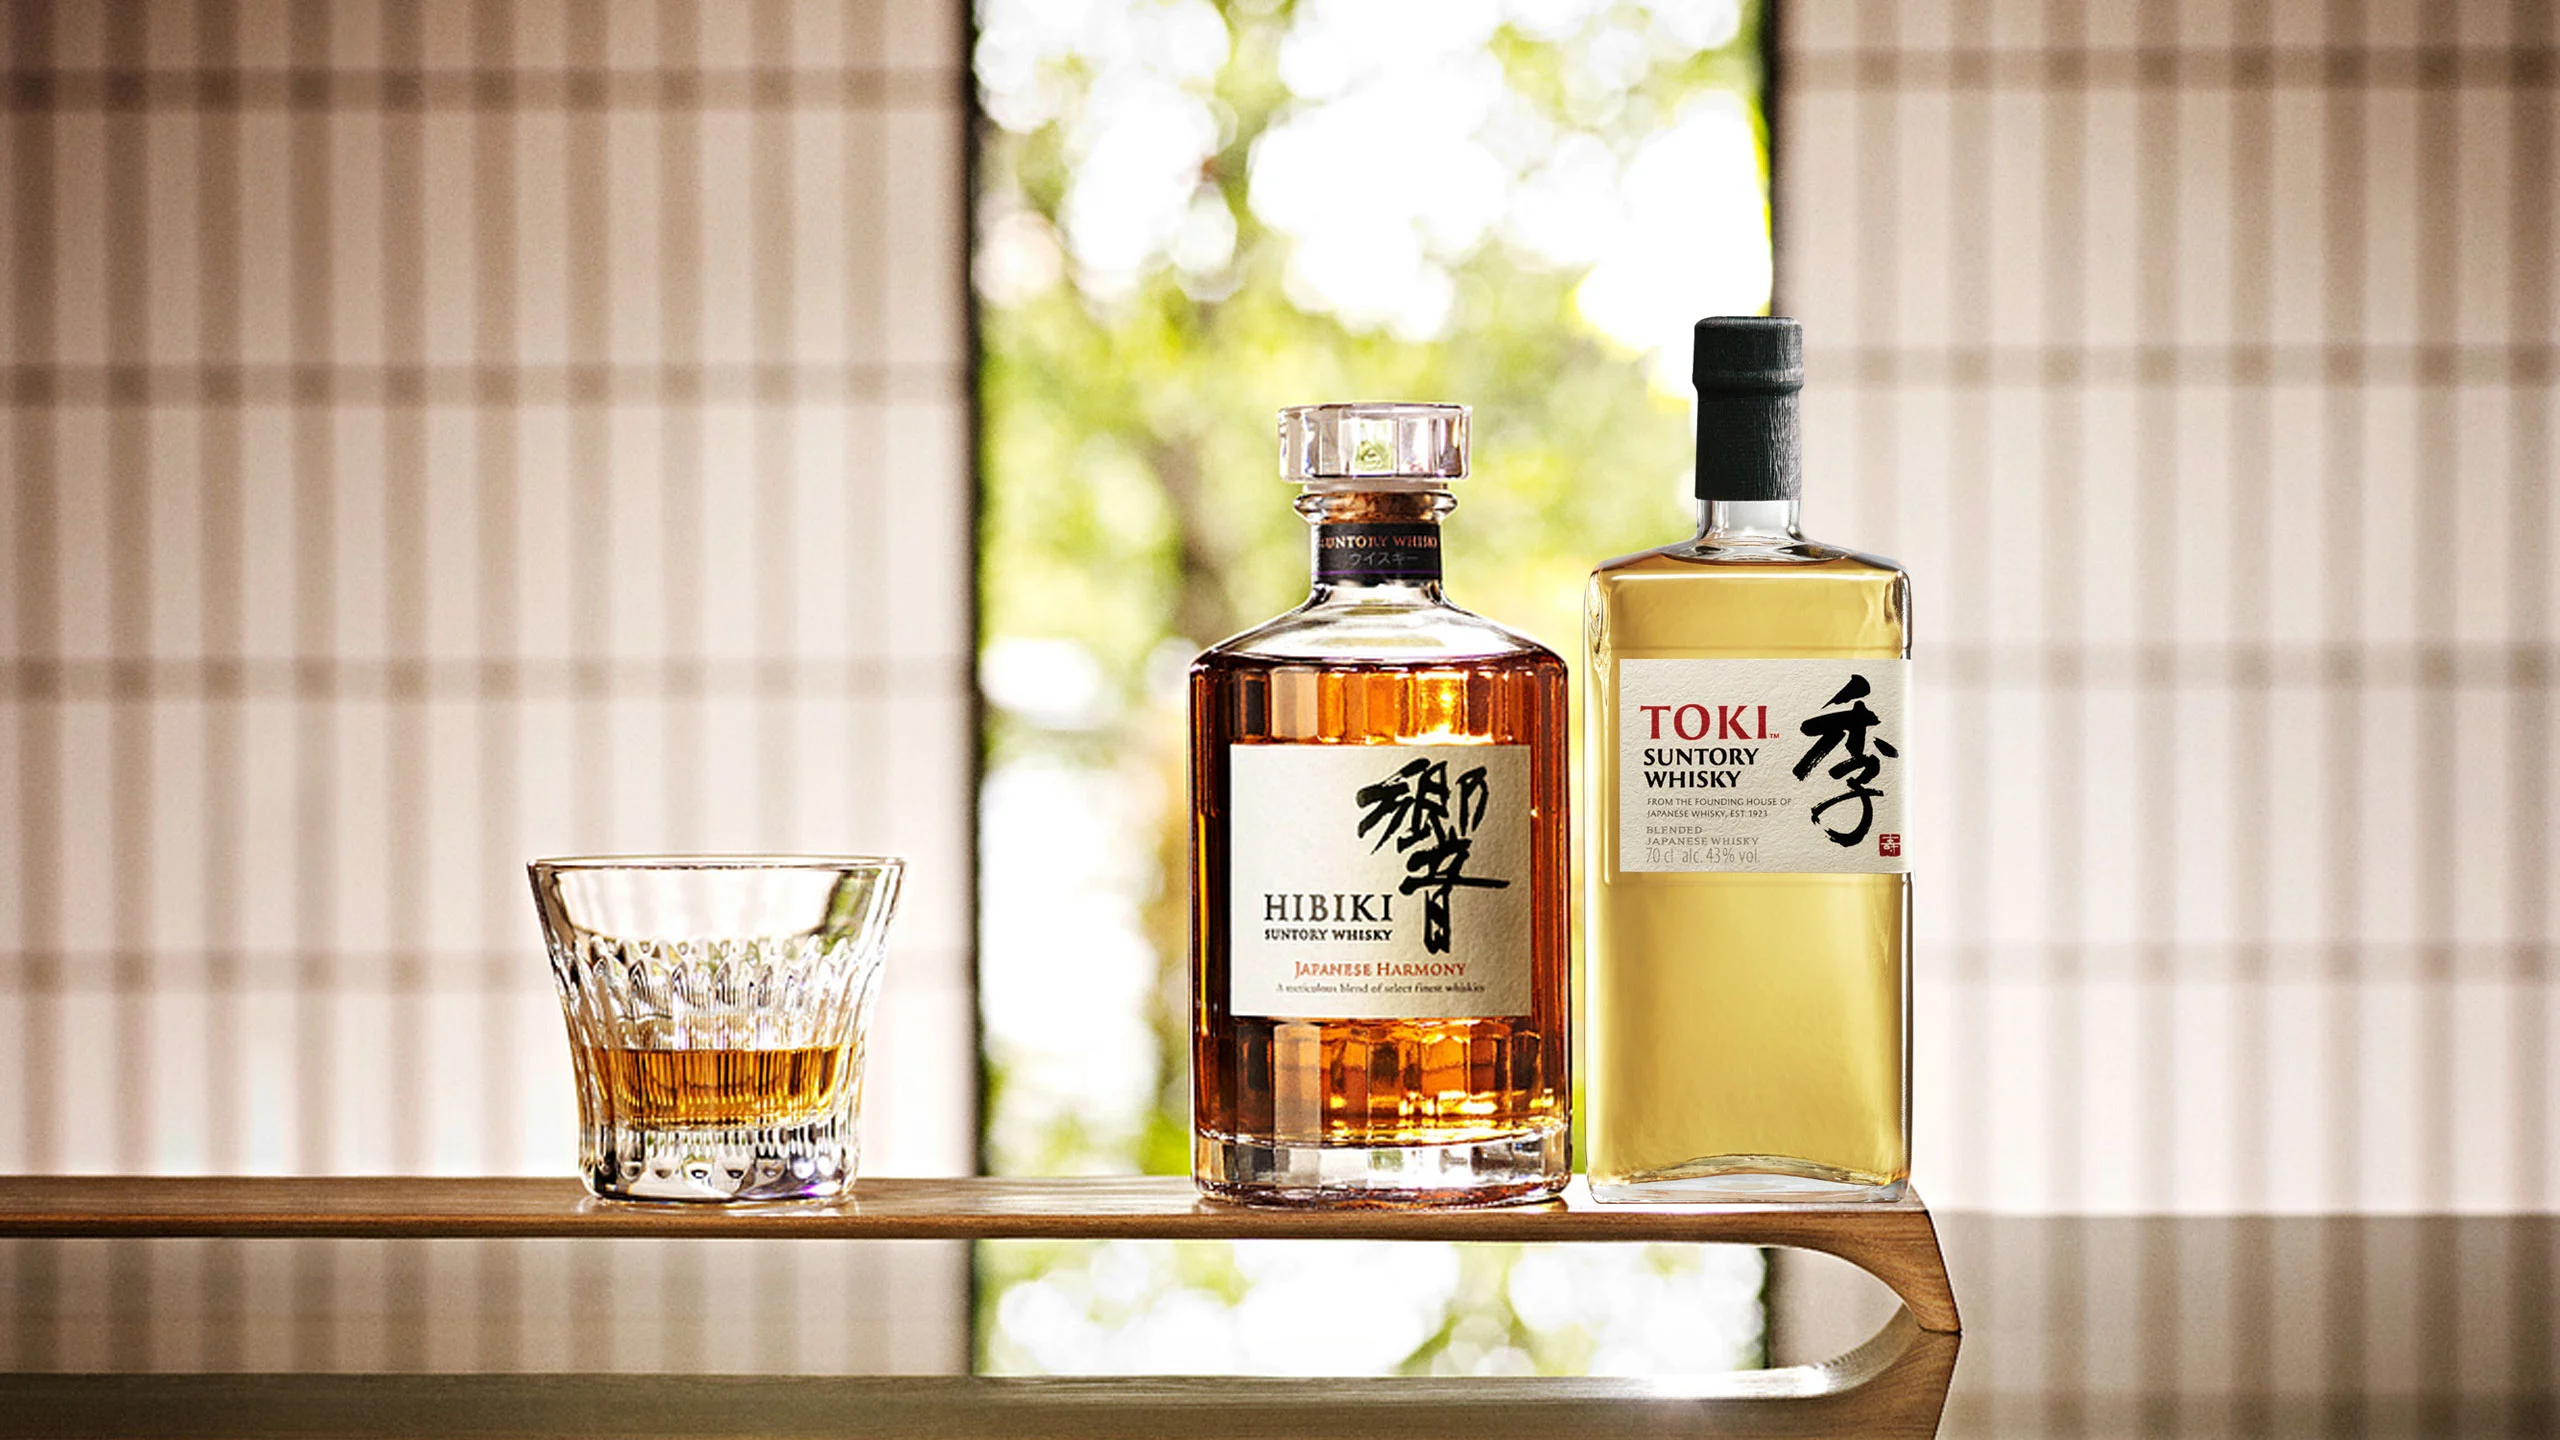 Hibiki y Toki: dos whiskies japoneses exclusivos y artesanales